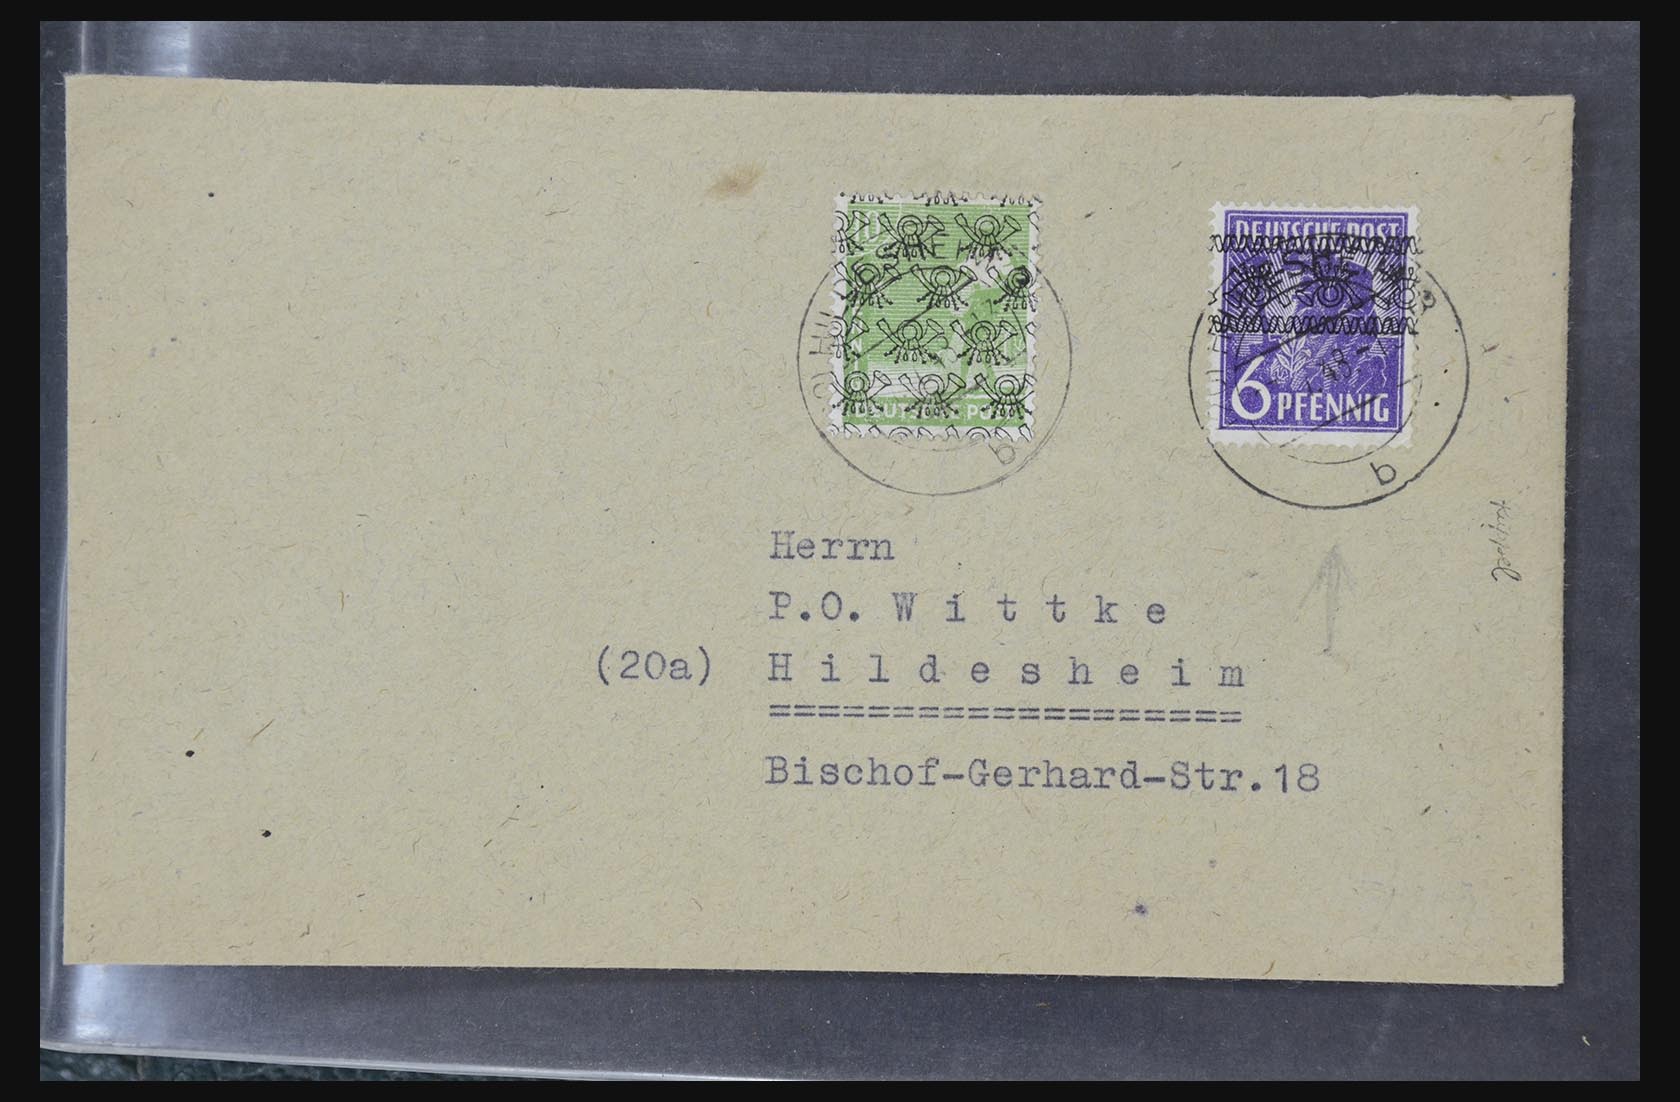 31581 048 - 31581 Duitsland brieven en FDC's 1945-1981.